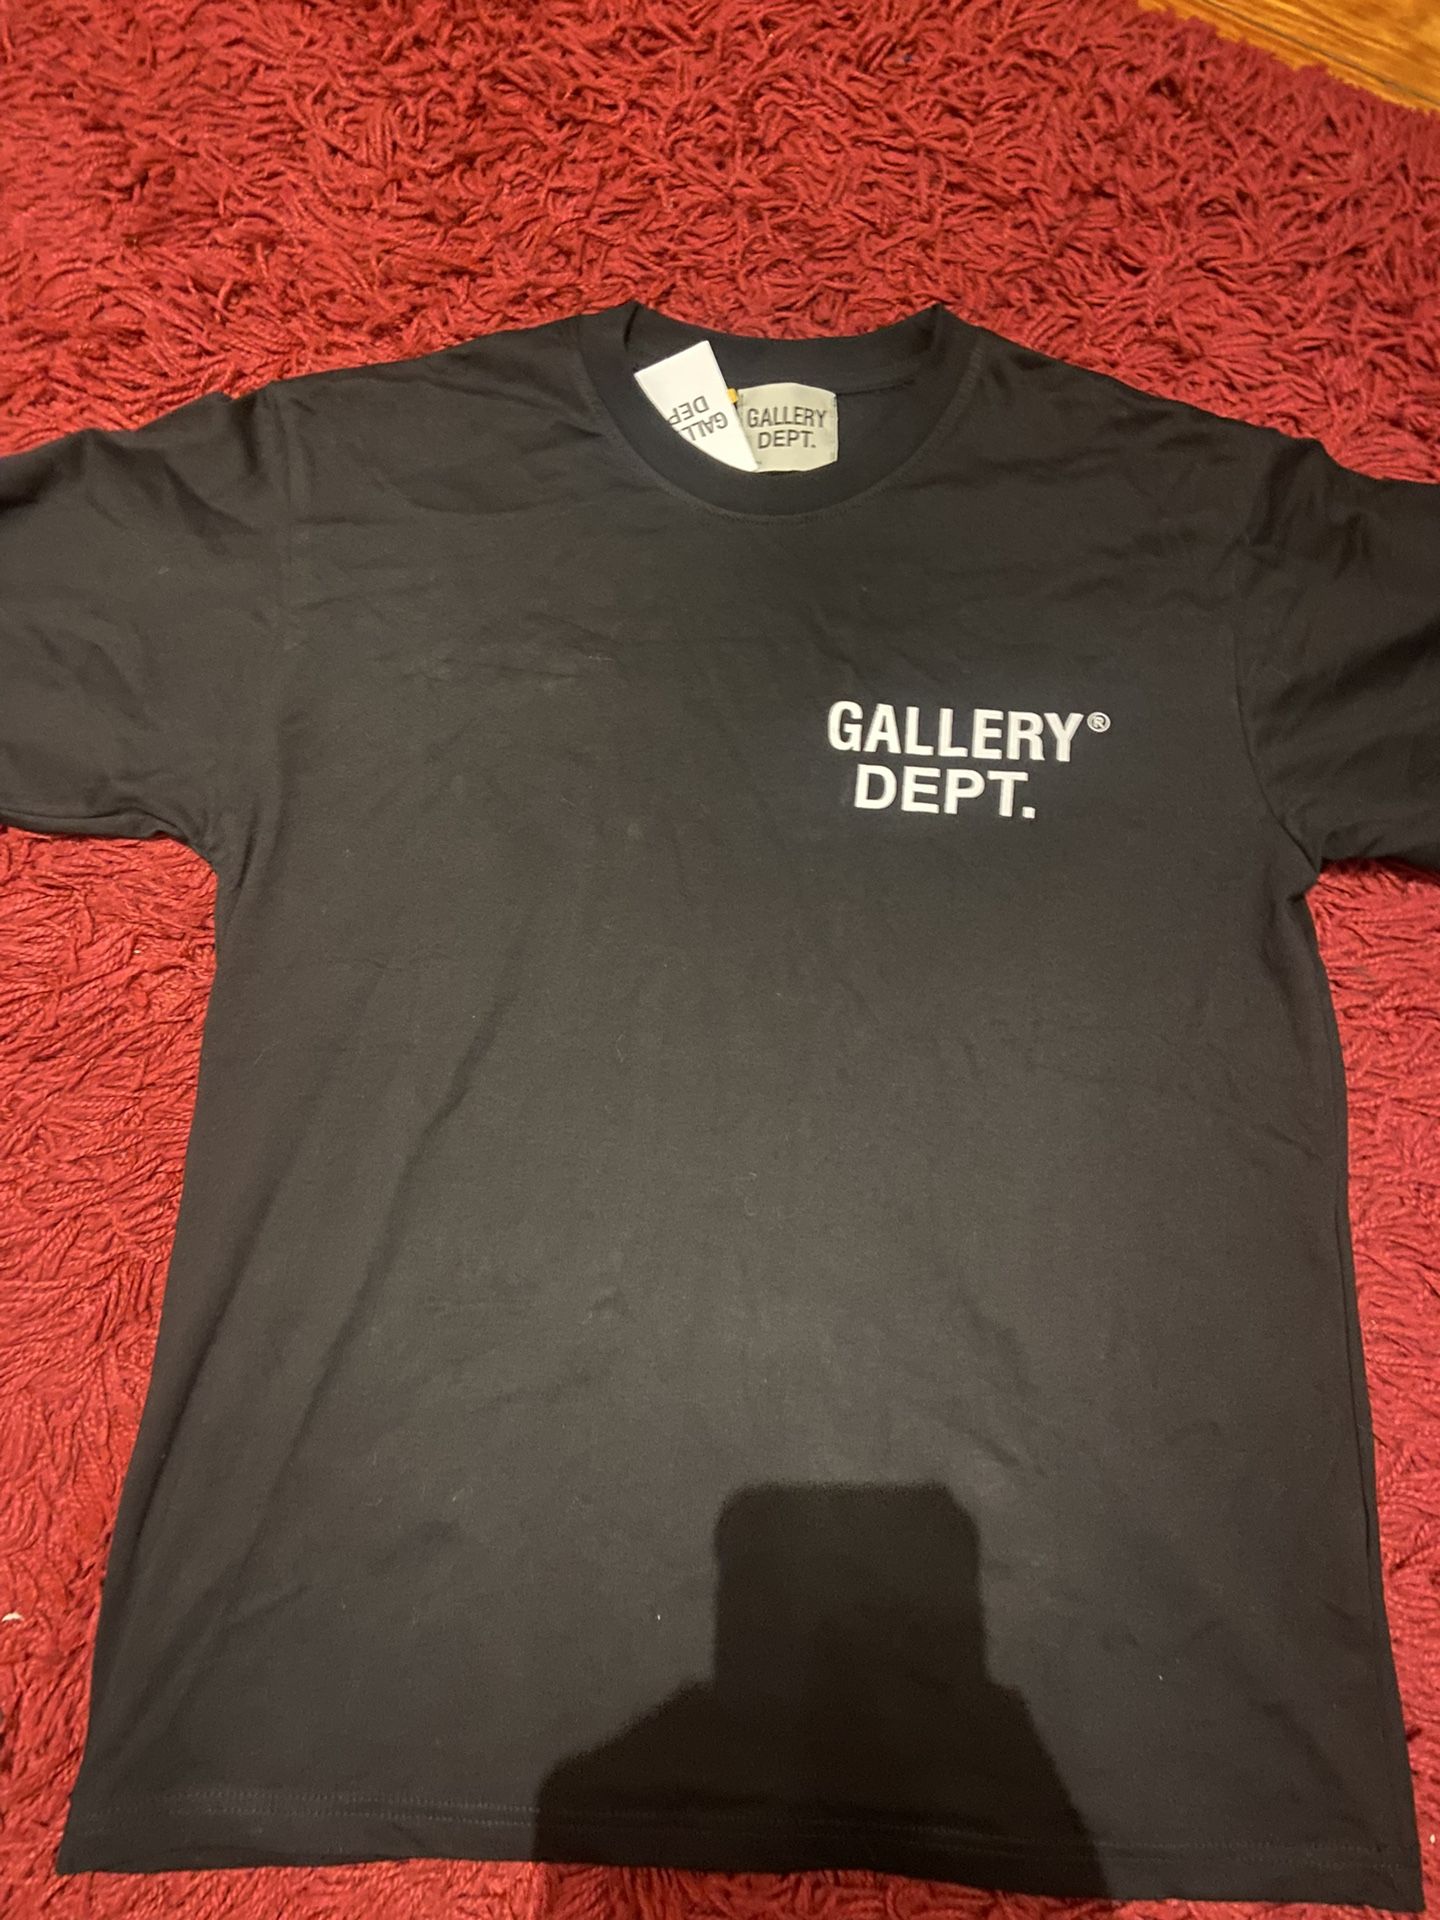 Gallery dept t shirt